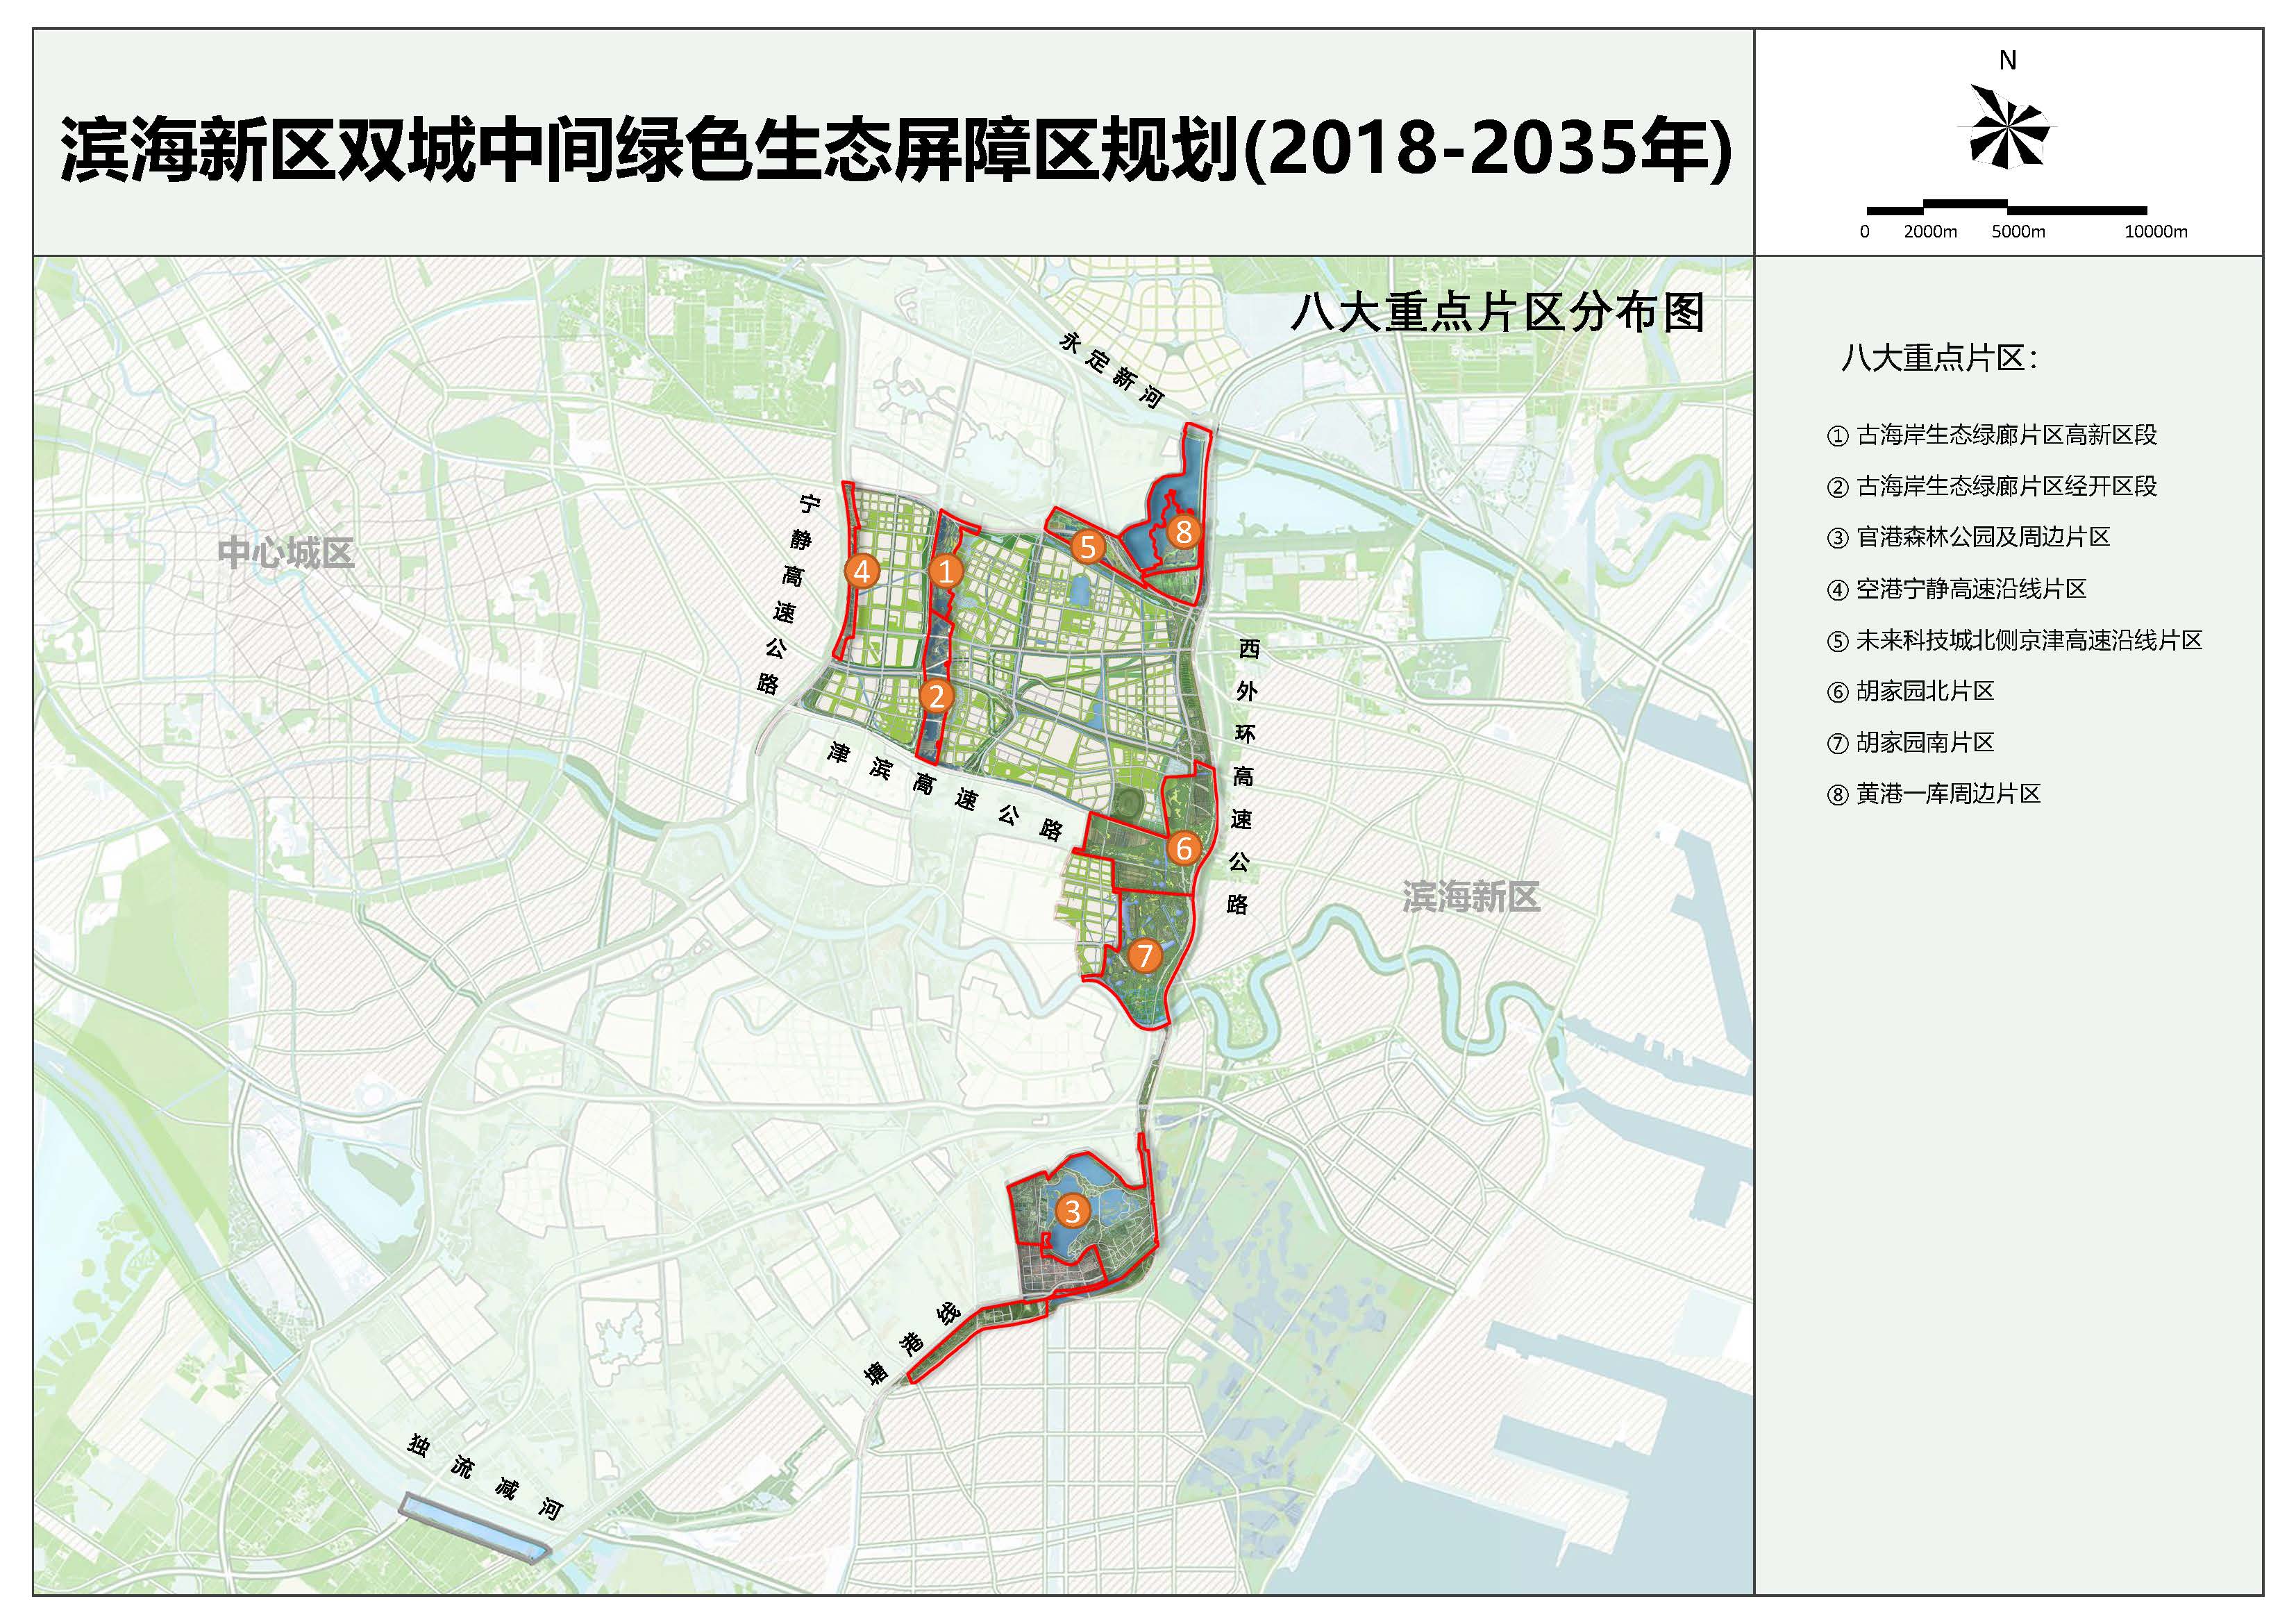 736平方公里！滨海新区双城中间绿色生态屏障规划来了-中国网地产